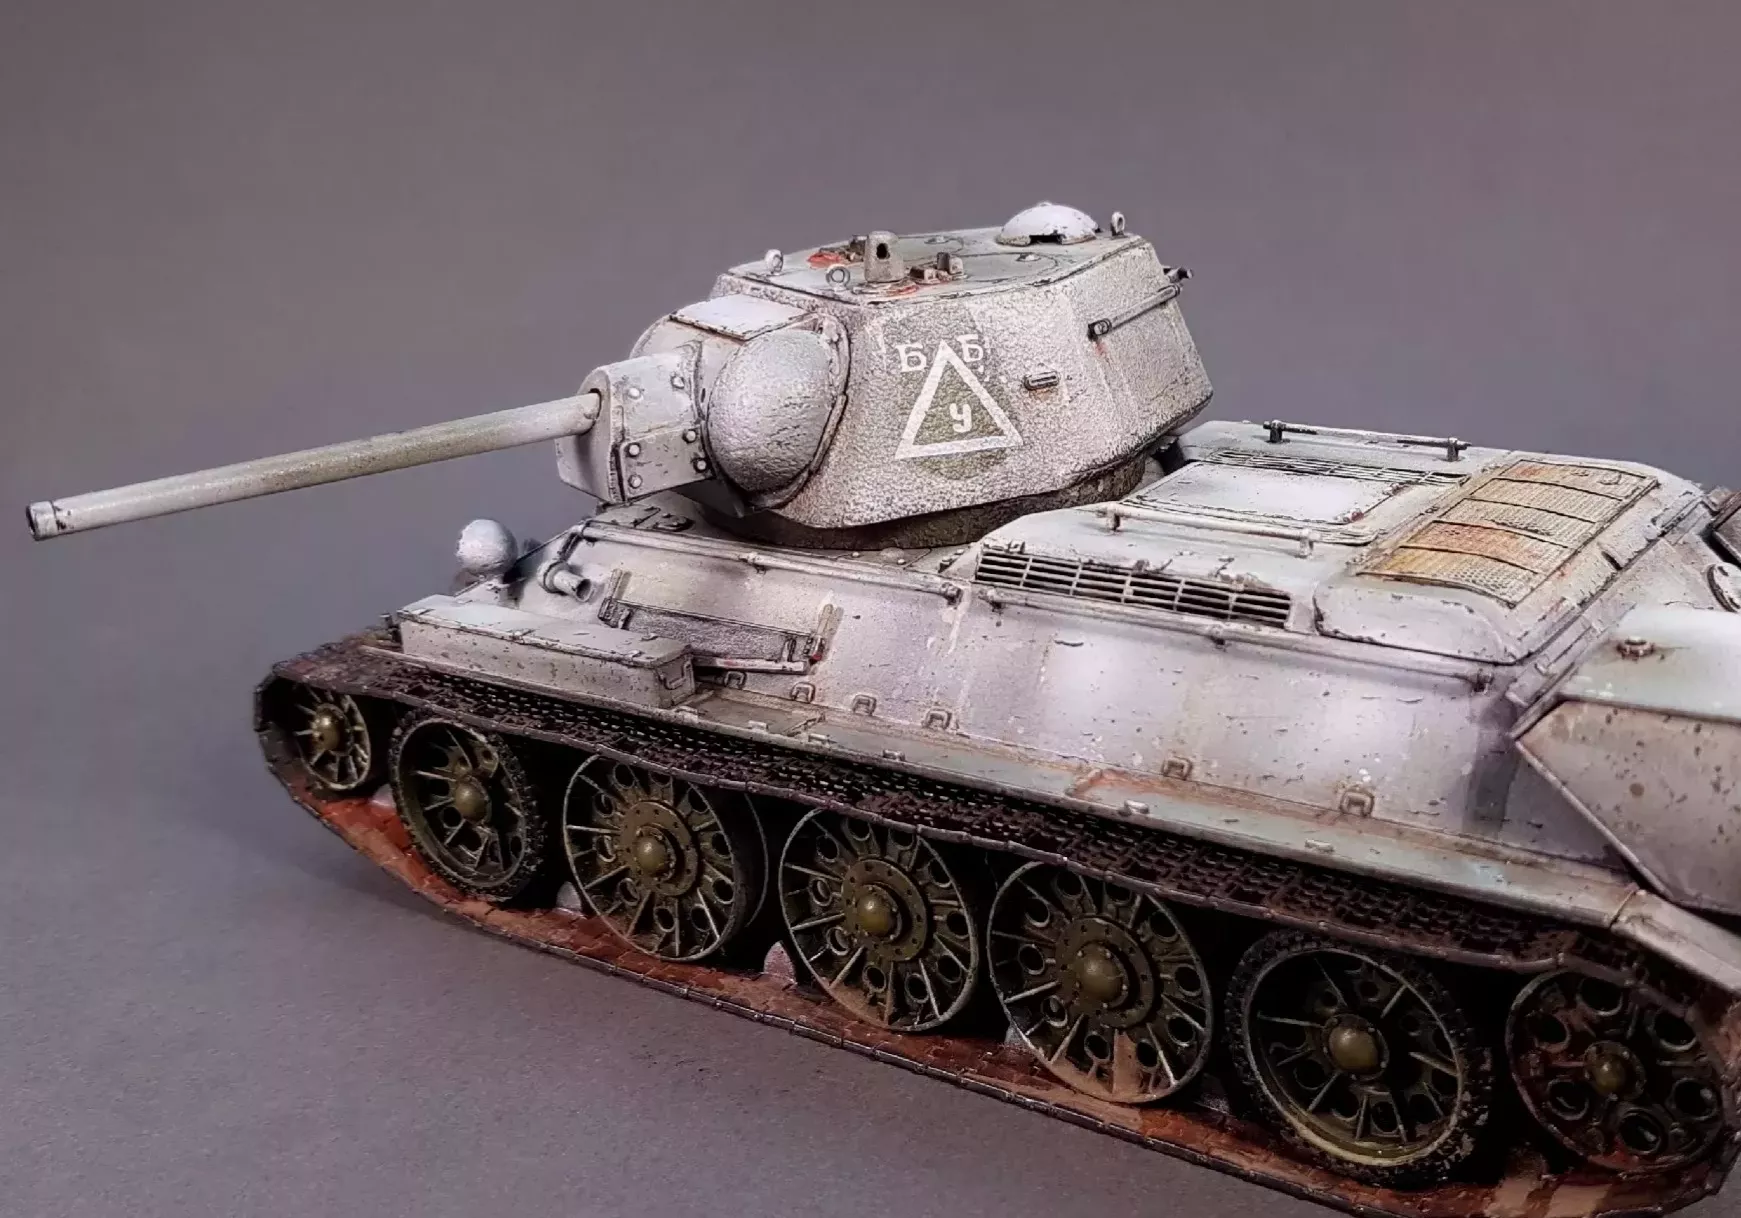 Советский танк Т-34-76 выпуск начала 1943 г